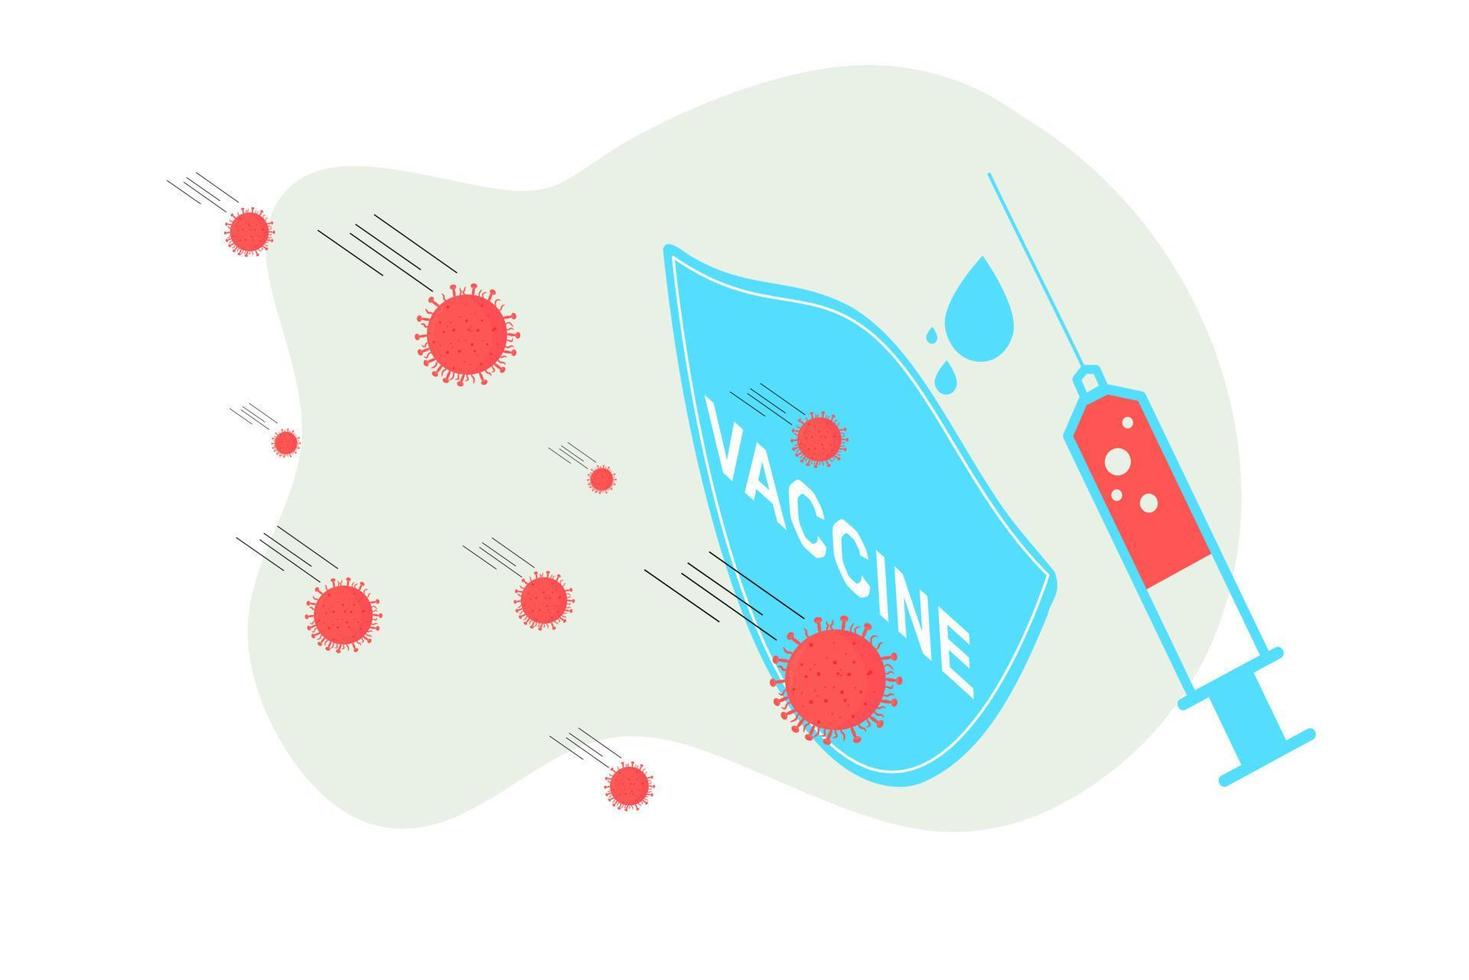 målsidan för vaccinationswebbplatsen. vaccinationskampanj. hälsovård och skydd. isometrisk medicinsk behandling. platt vektorillustration för medicinska webbikoner, ui, mobilapplikation, affischer vektor